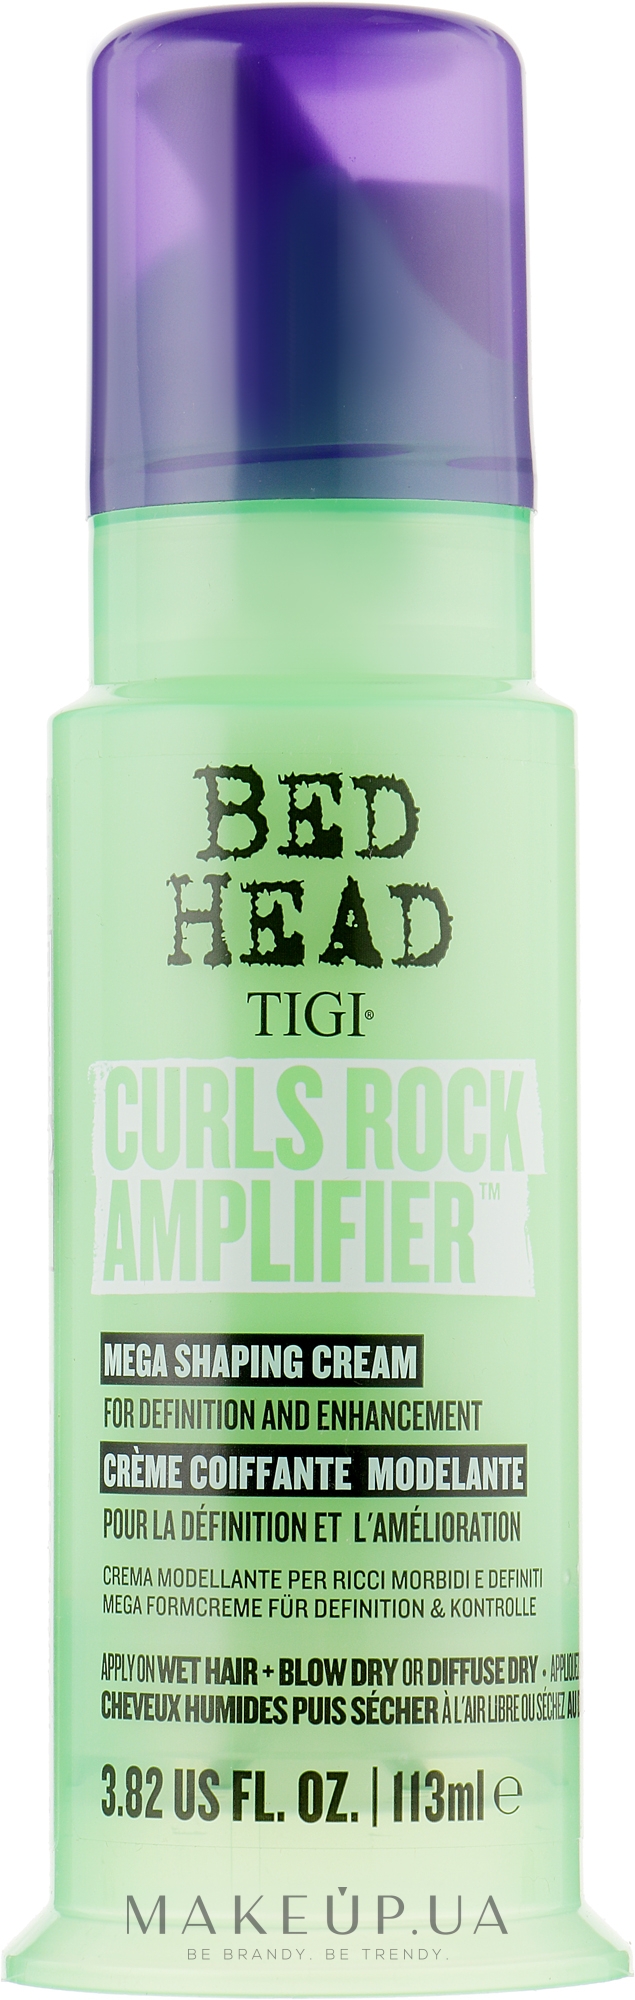 Крем для вьющихся волос - Tigi Bed Head Curls Rock Amplifier Curly Hair Cream — фото 113ml